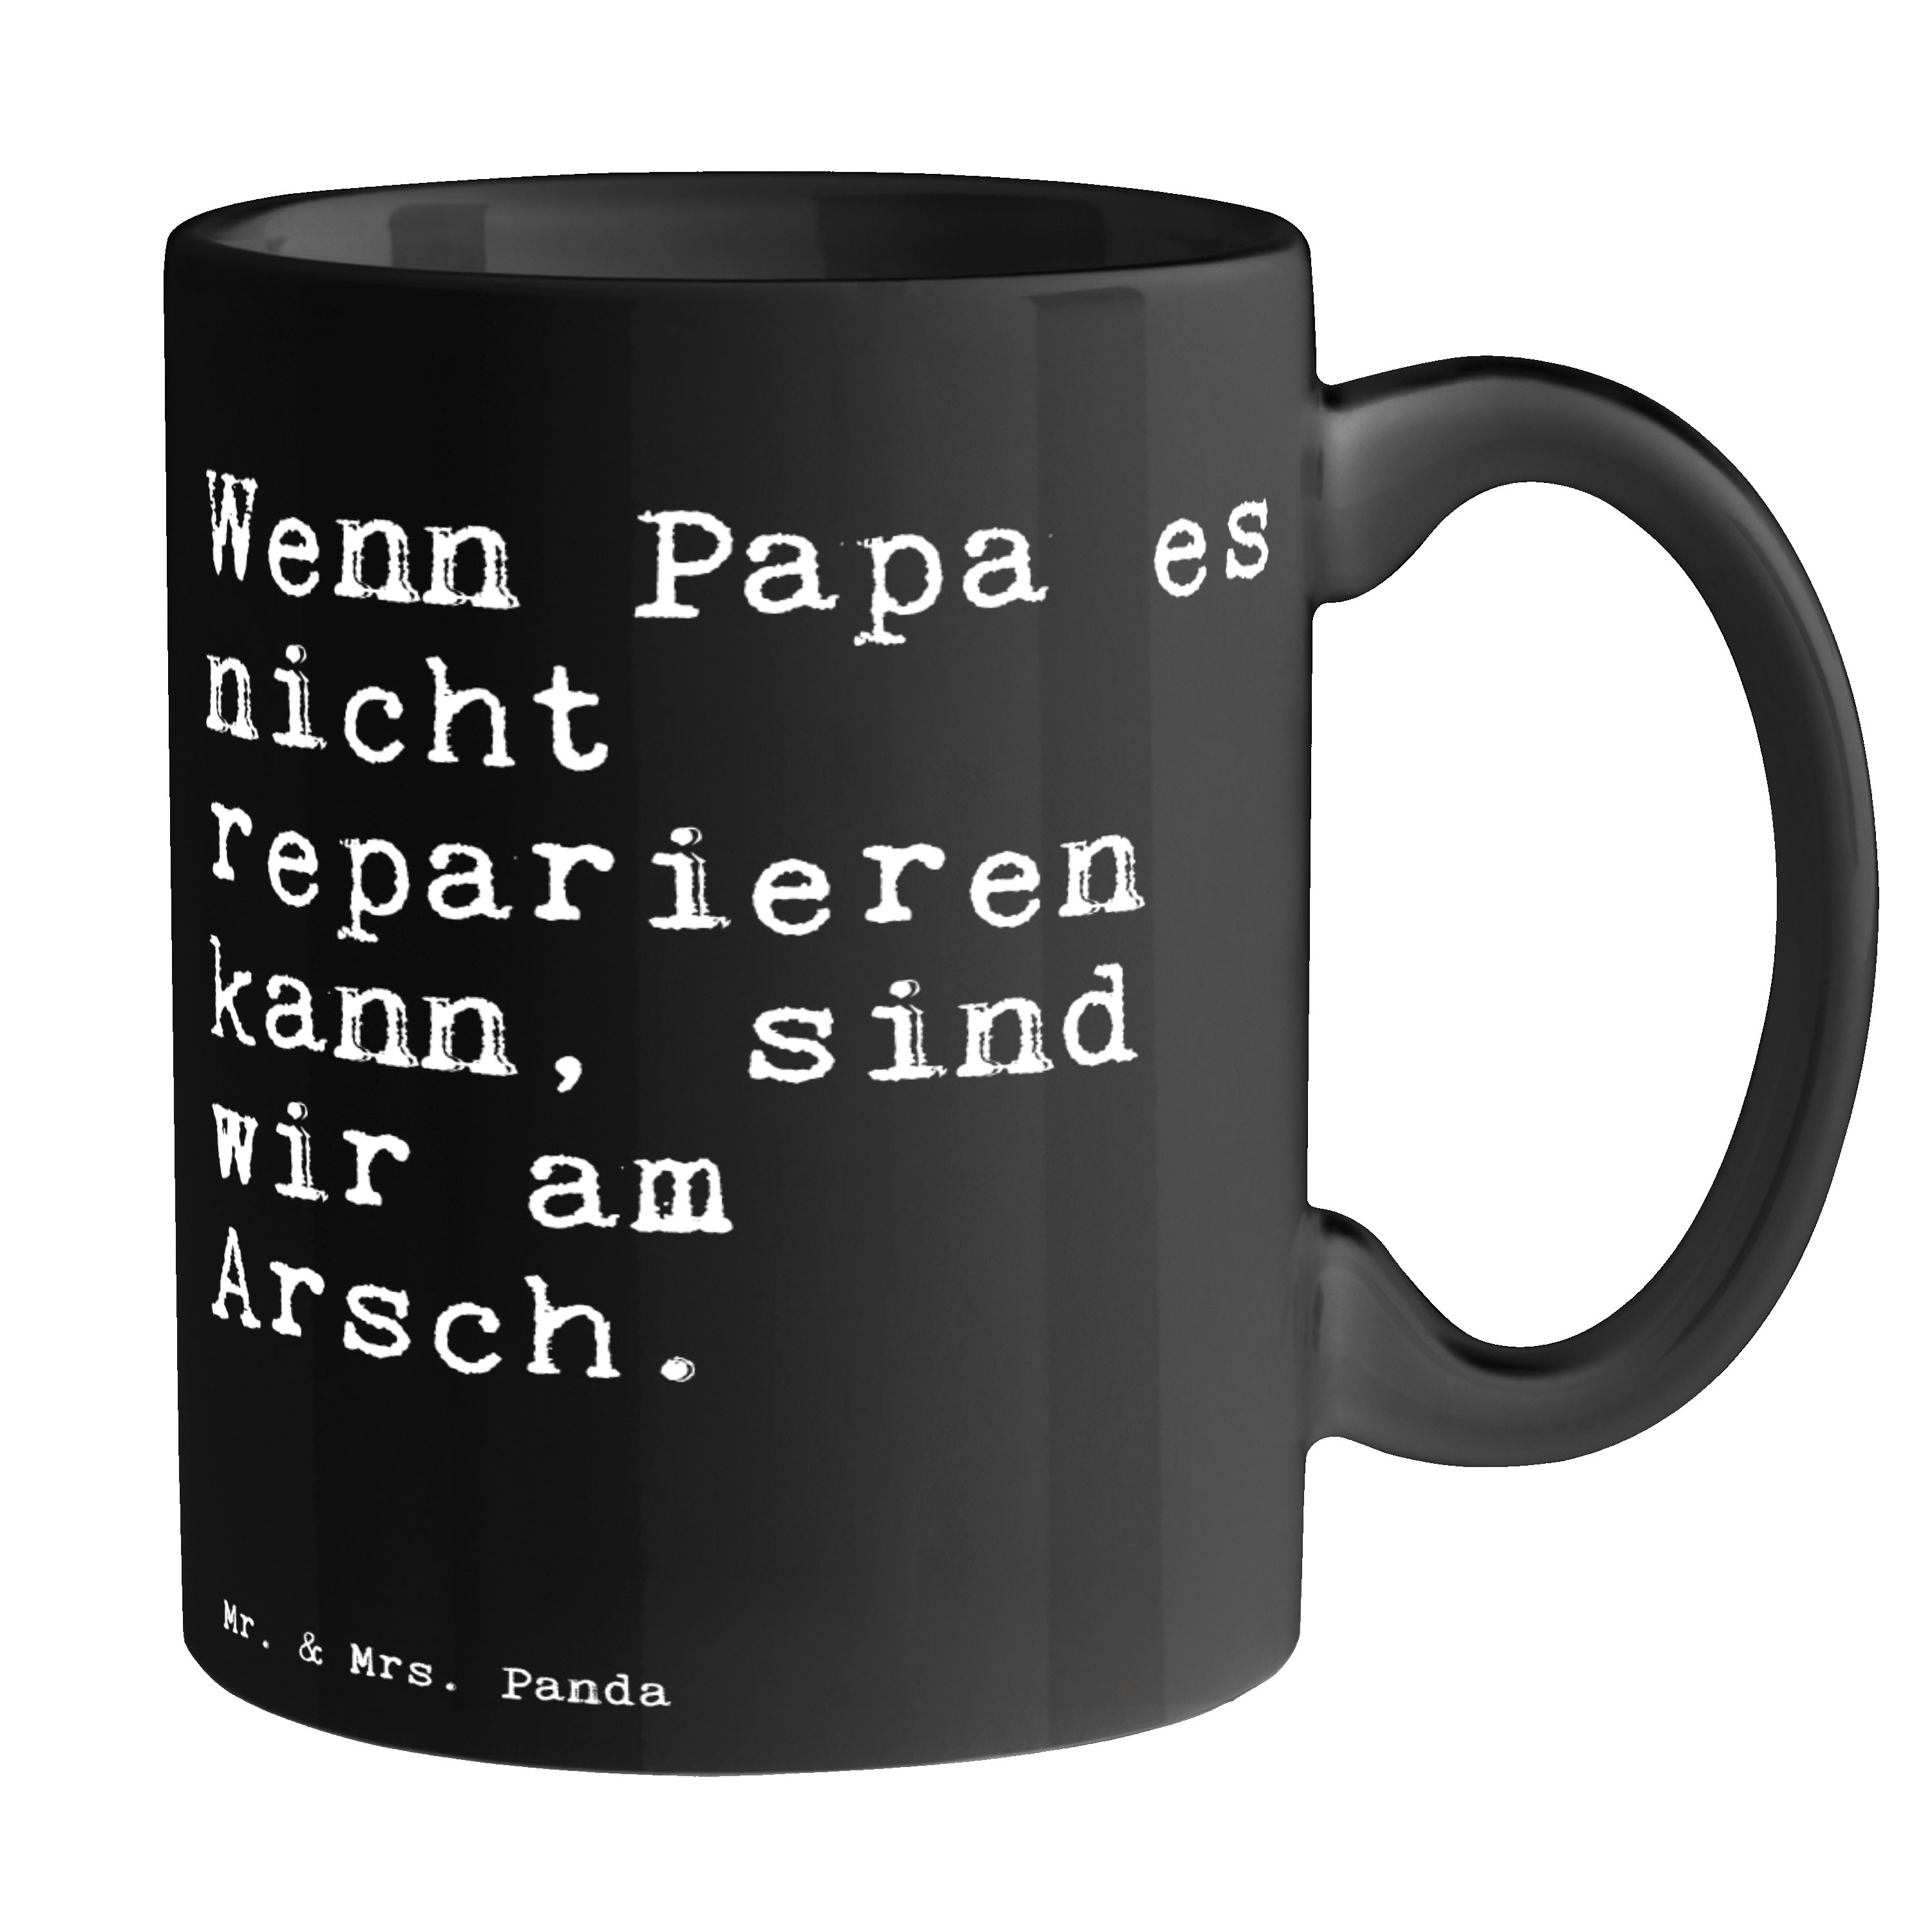 Mr. & Mrs. Panda Tasse Wenn Papa es nicht... - Schwarz - Geschenk, Vater, Weisheiten, Kaffee, Keramik Schwarz